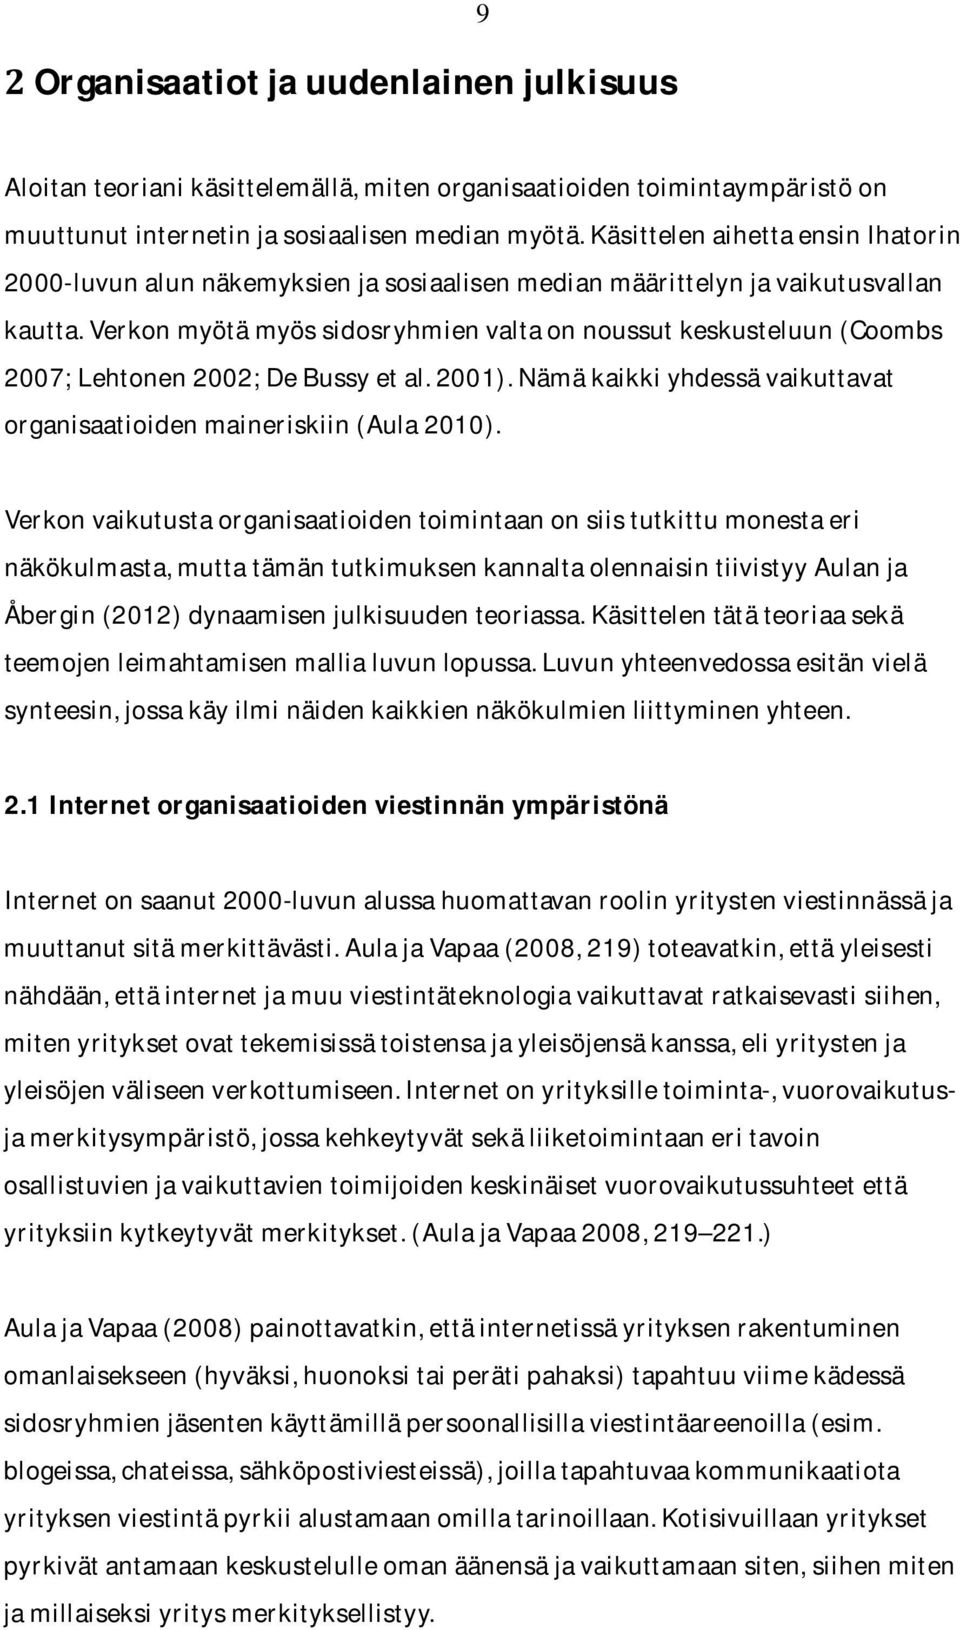 verkonmyötämyössidosryhmienvaltaonnoussutkeskusteluun(coombs 2007;Lehtonen2002;DeBussyetal.2001).Nämäkaikkiyhdessävaikuttavat organisaatioidenmaineriskiin(aula2010).